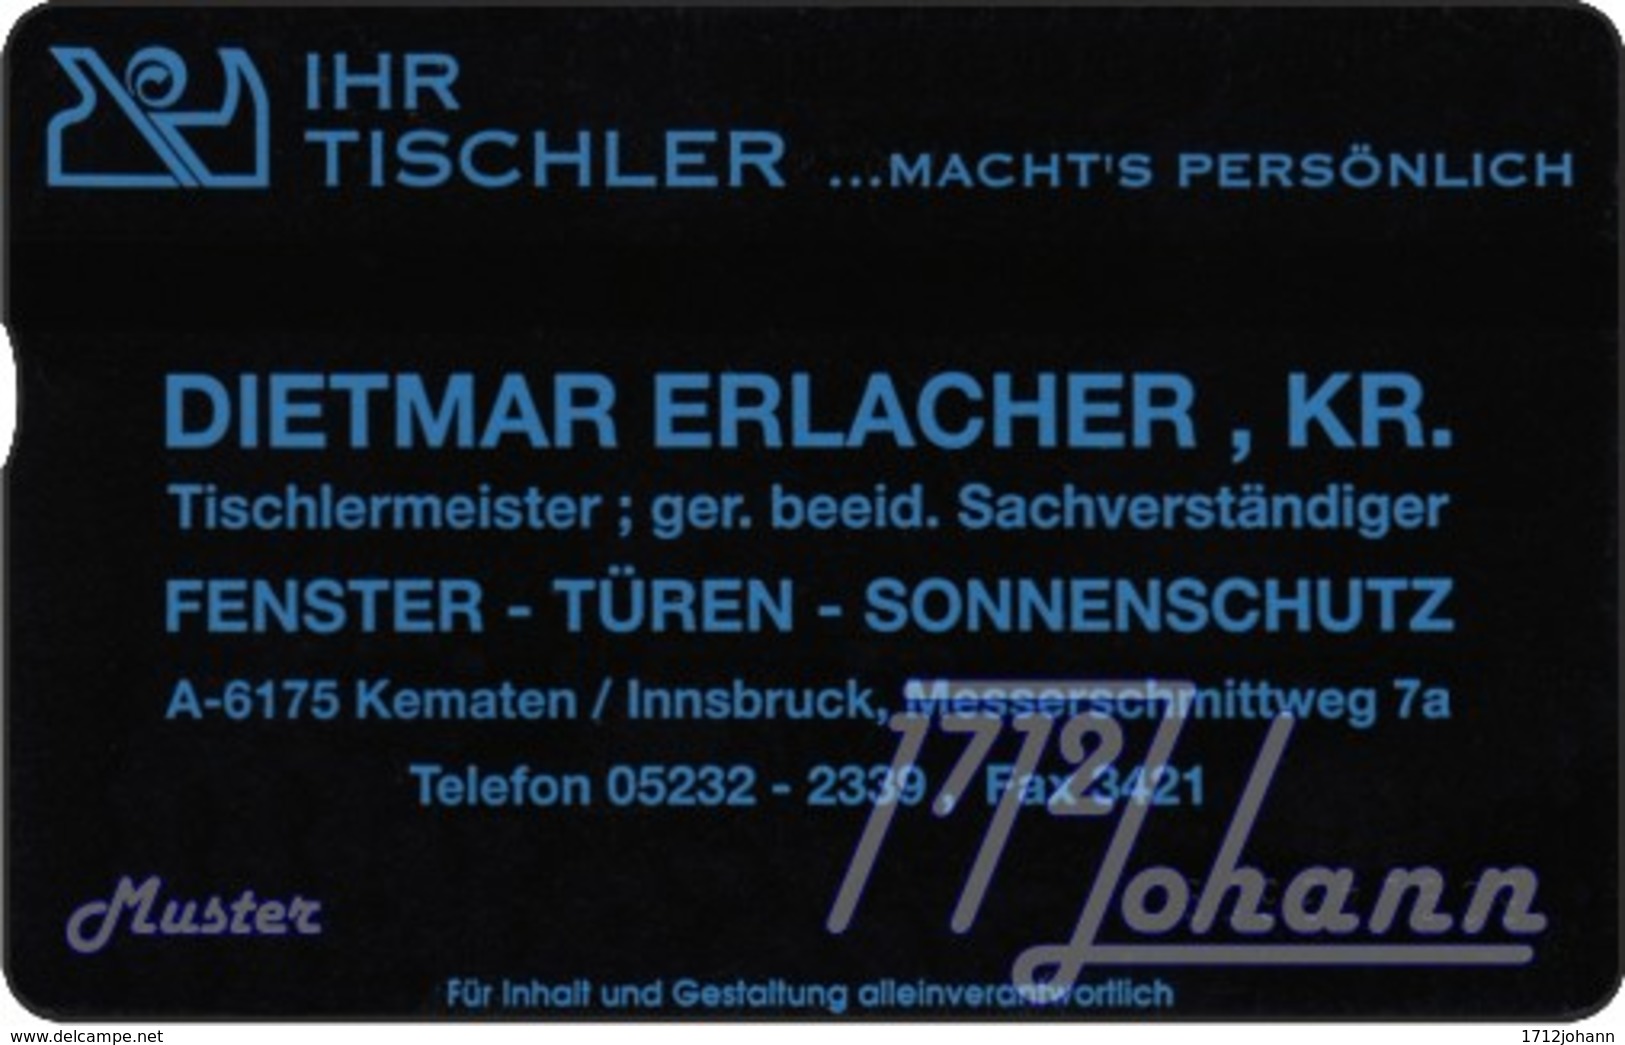 TWK Österreich Privat: "Ihr Tischler - Erlacher" Gebr. - Oesterreich